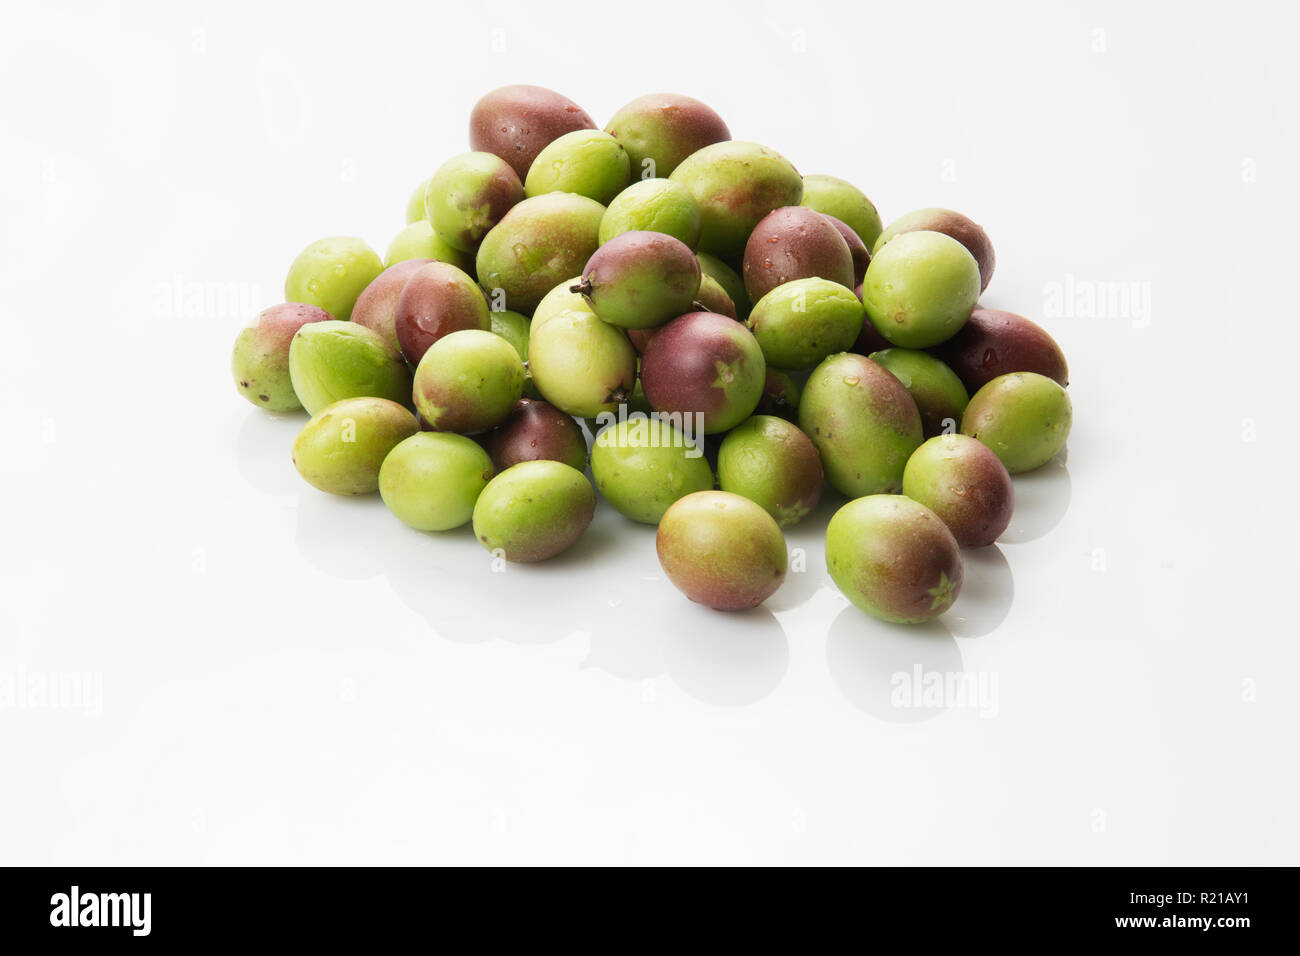 Fruit: Heap of Karanda Fruits on White Background Stock Photo